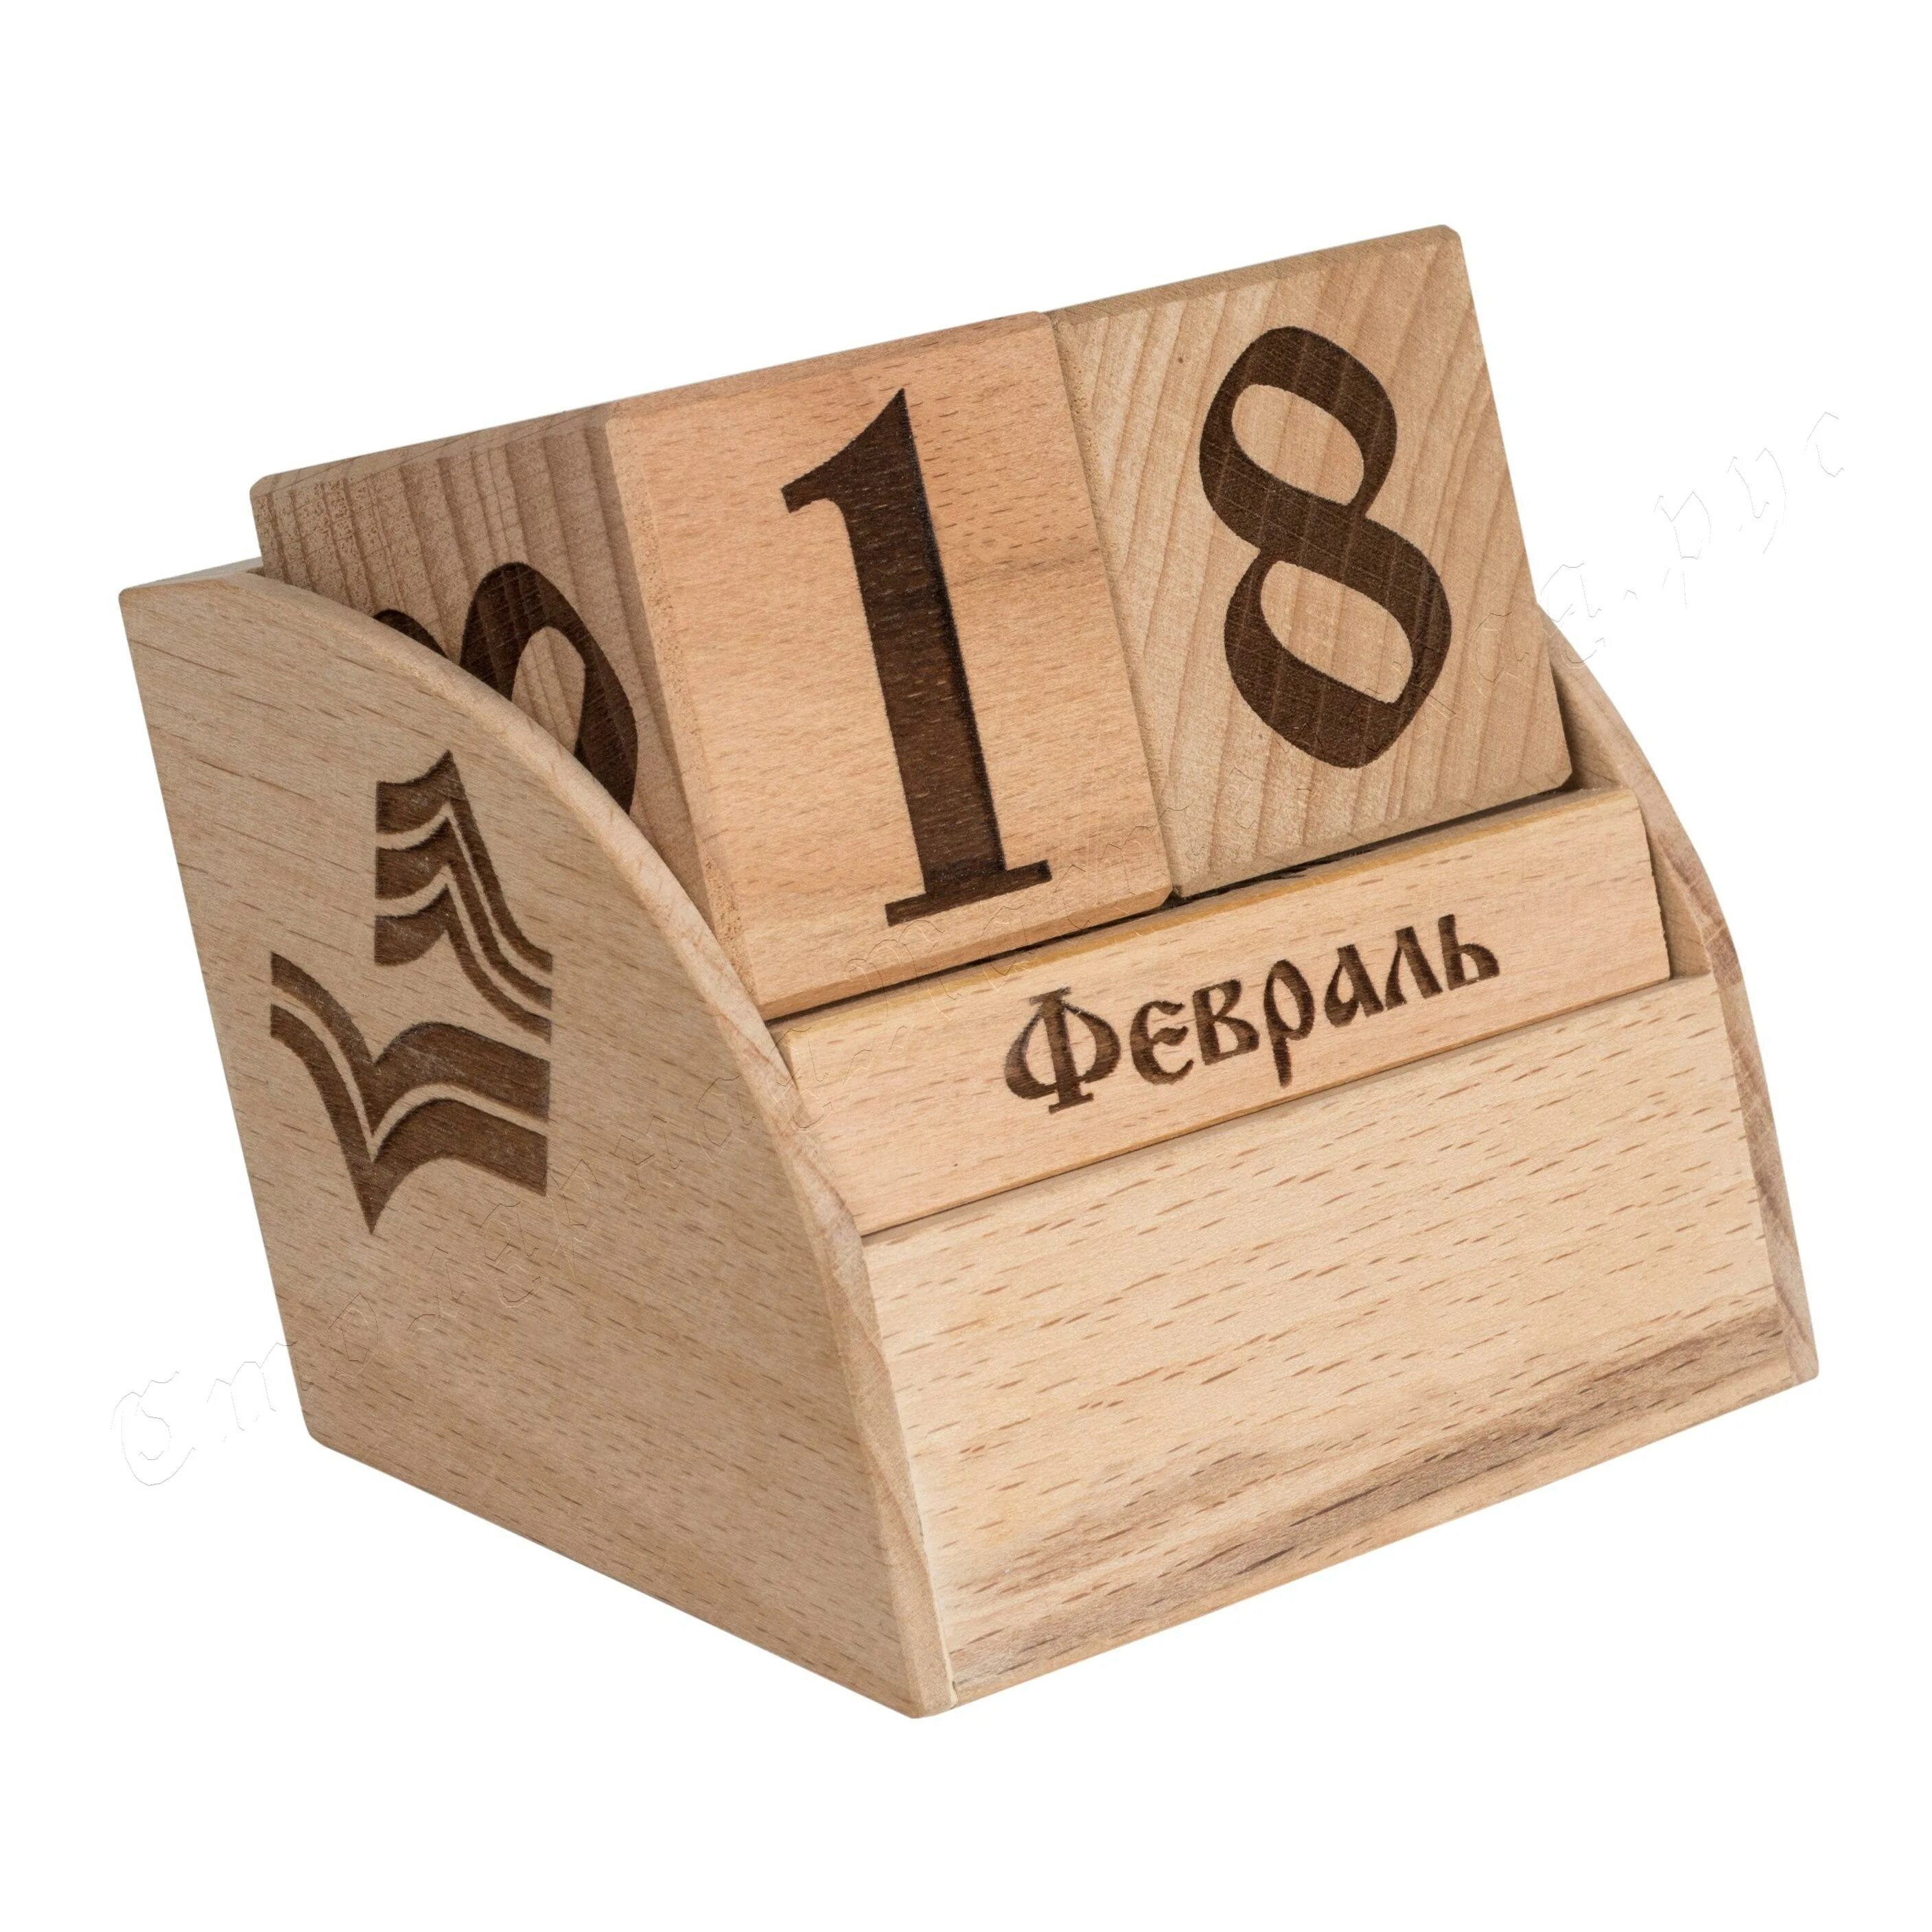 Вечный календарь. Вечный календарь из дерева. Календарь деревянный настольный. Деревянные сувениры. Купить календарь дерево